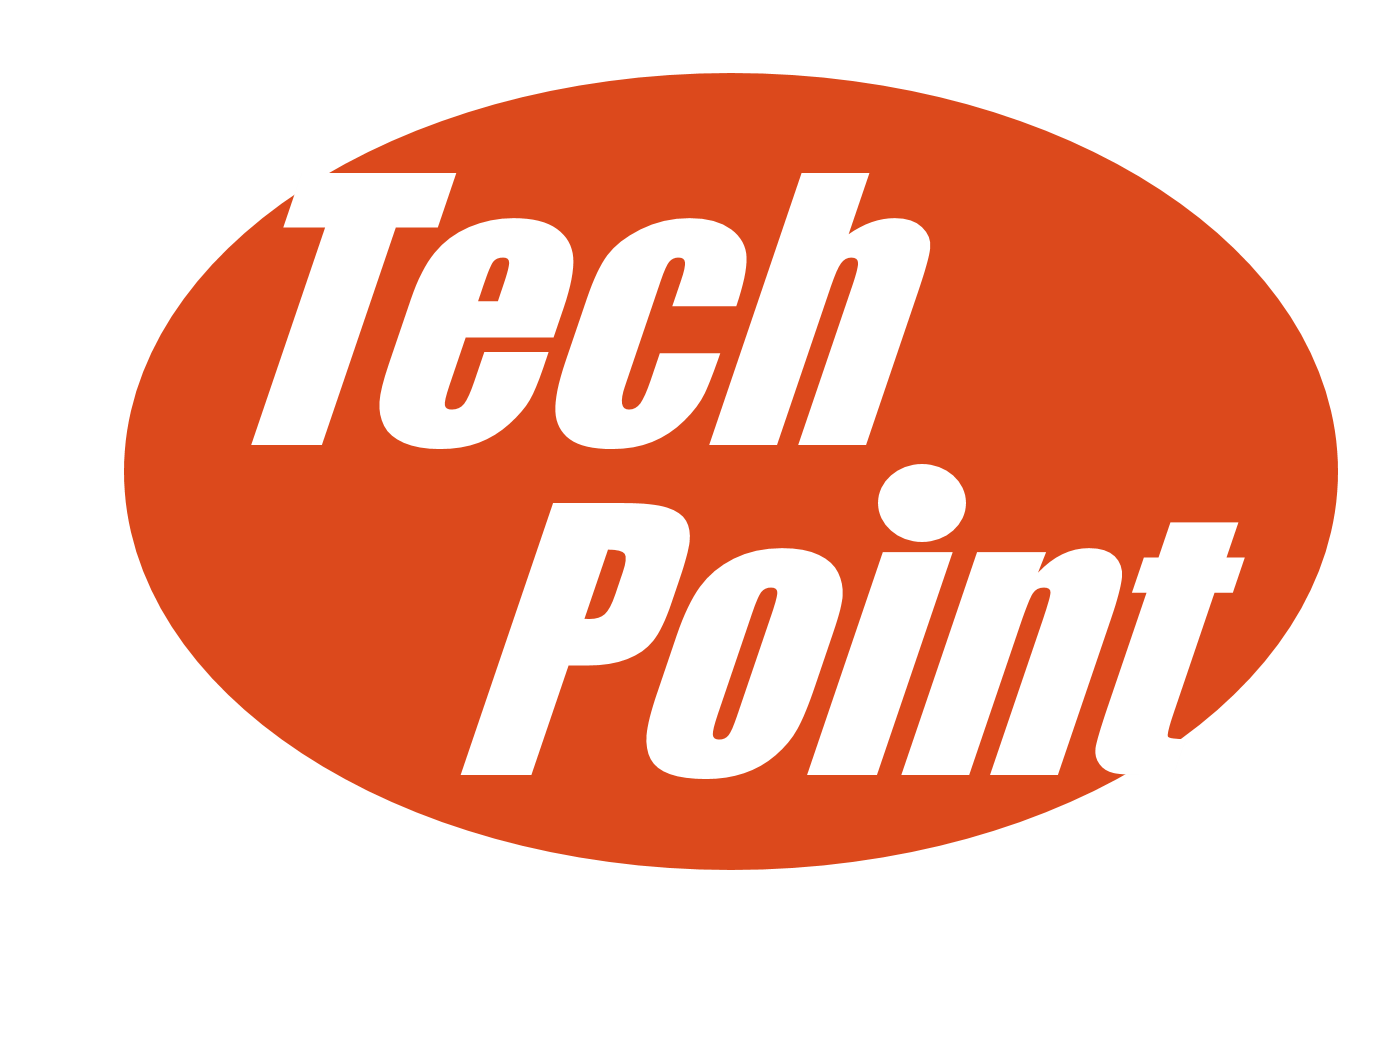 Kit Scc Dienste Allgemeines Hilfe Support Techpoint